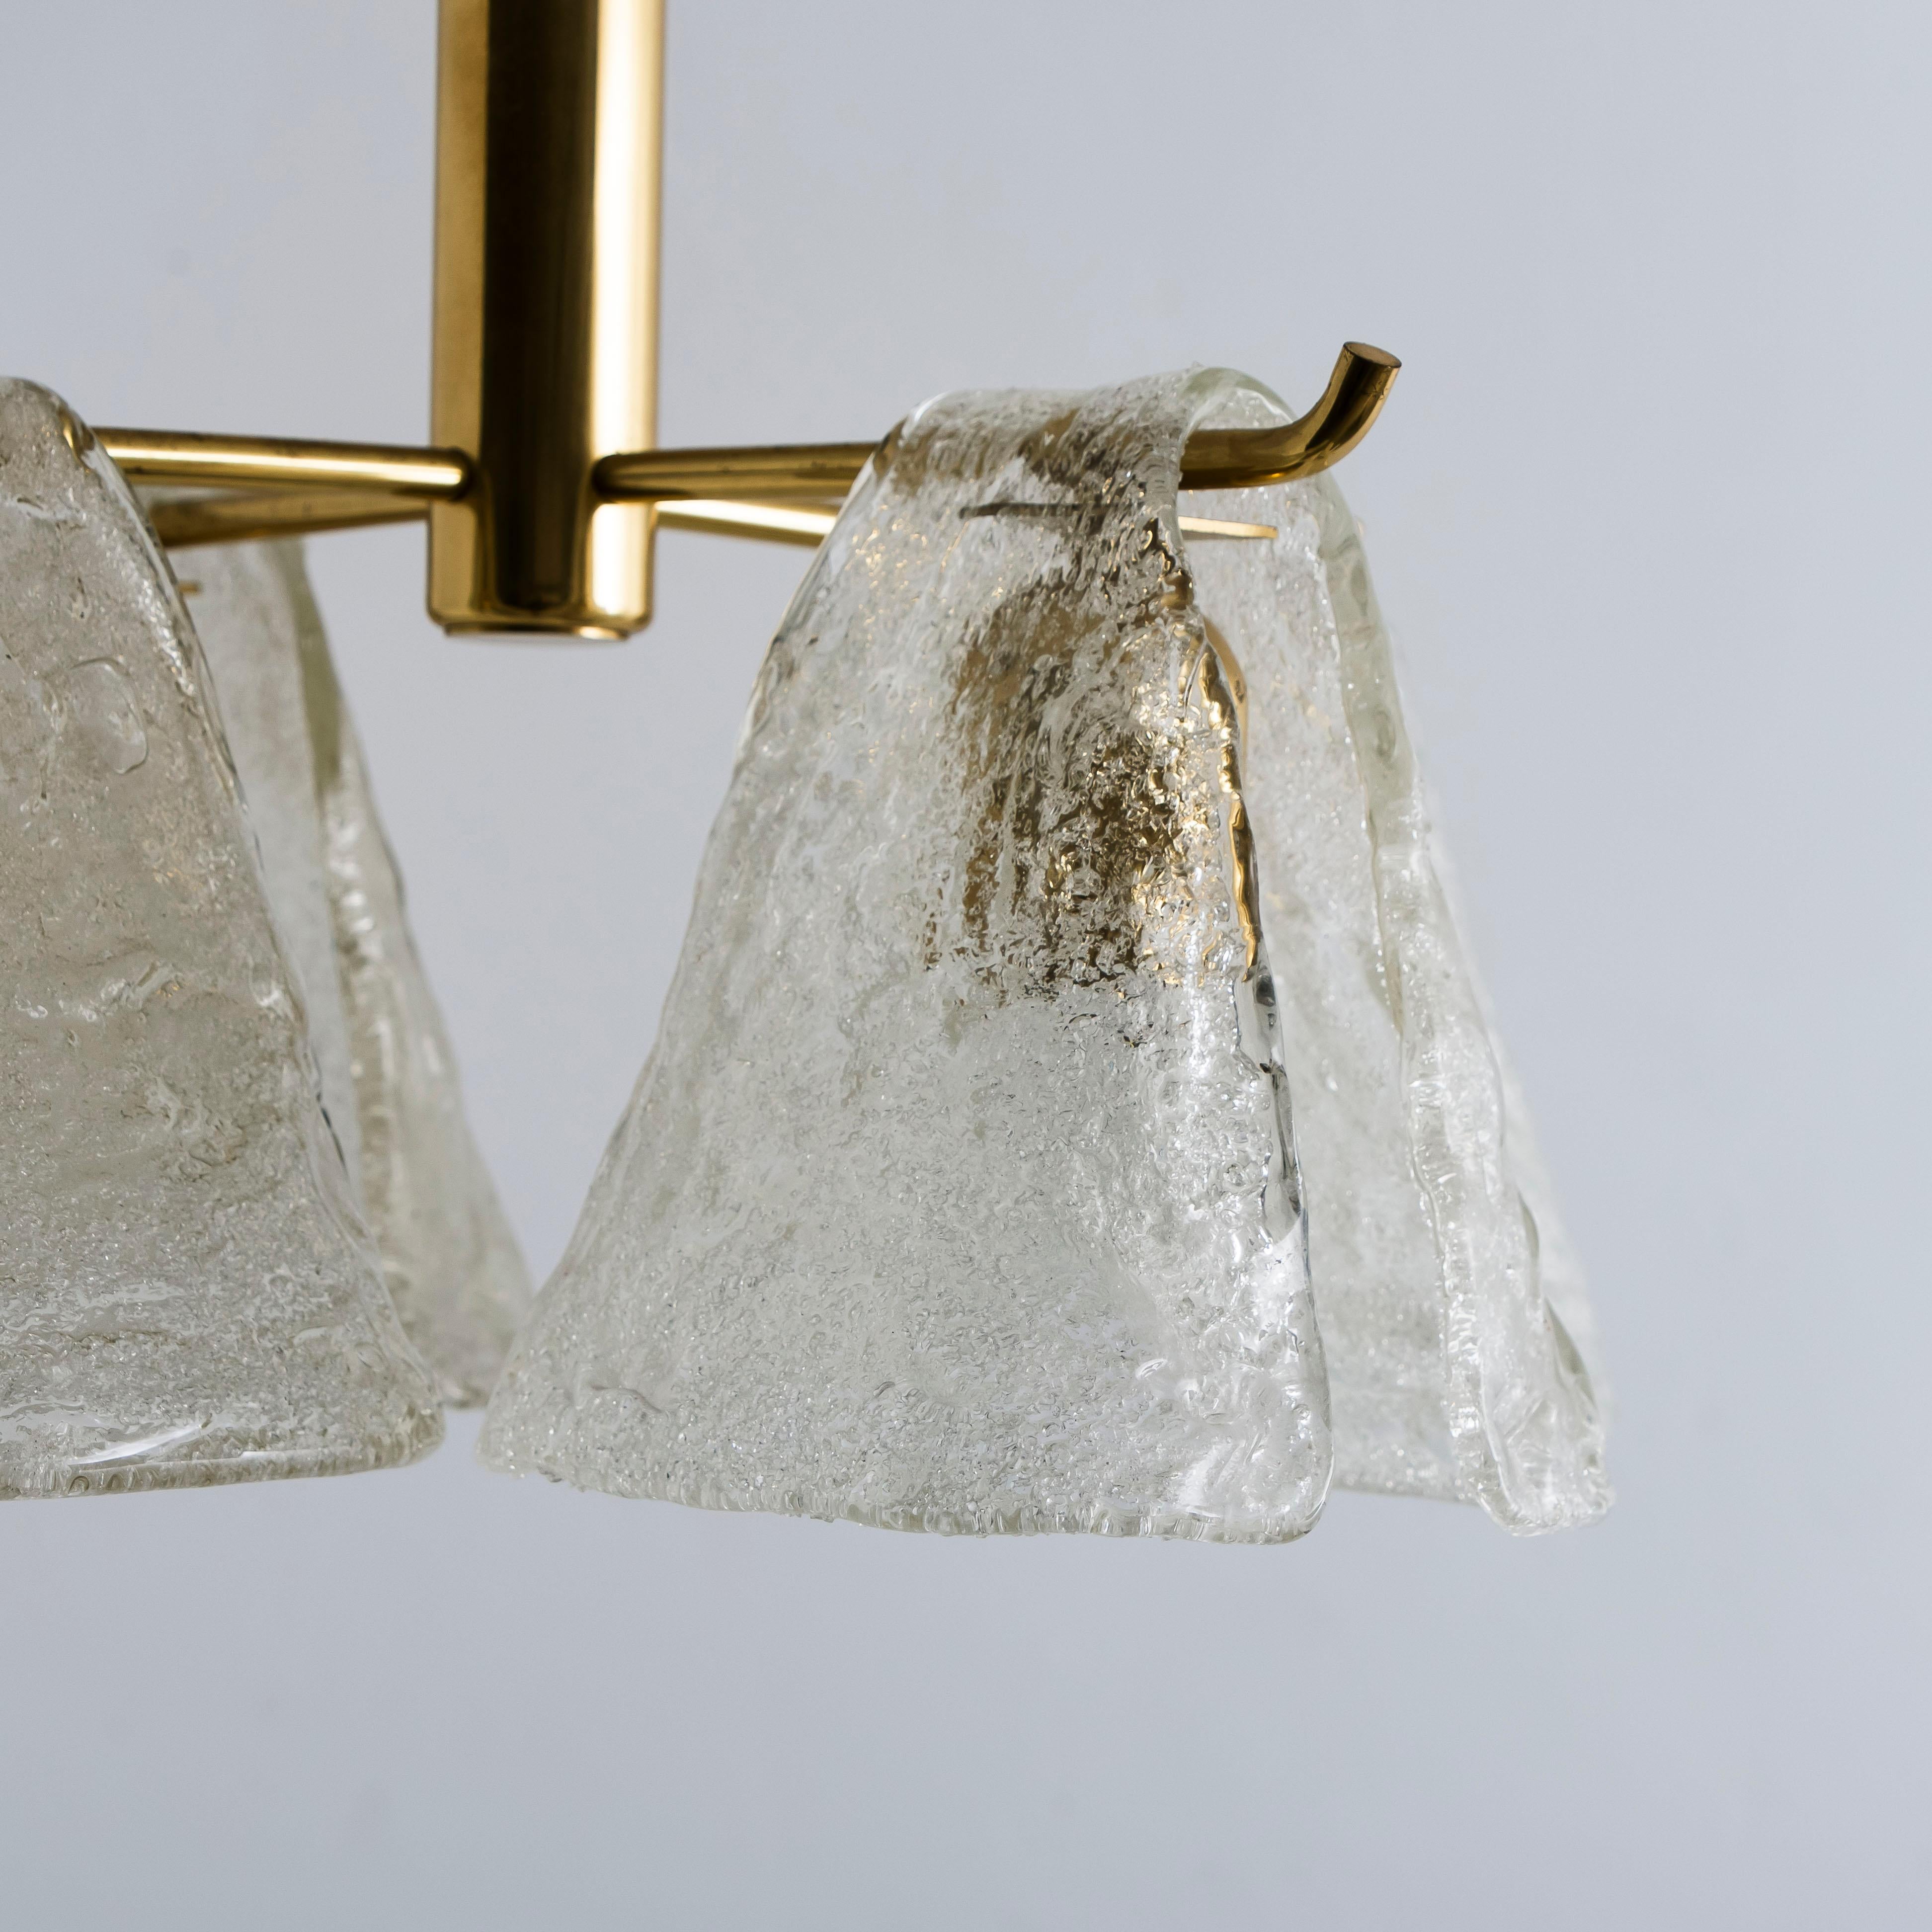 Dieser Kronleuchter besteht aus einer Messingstruktur, über die sich vier Lampenschirme aus geblasenem Glas zu ergießen scheinen. Leuchtet wunderschön. 

Handgeblasenes Schmelzglas, hergestellt aus strukturiertem Glas. Hat eine sehr schöne